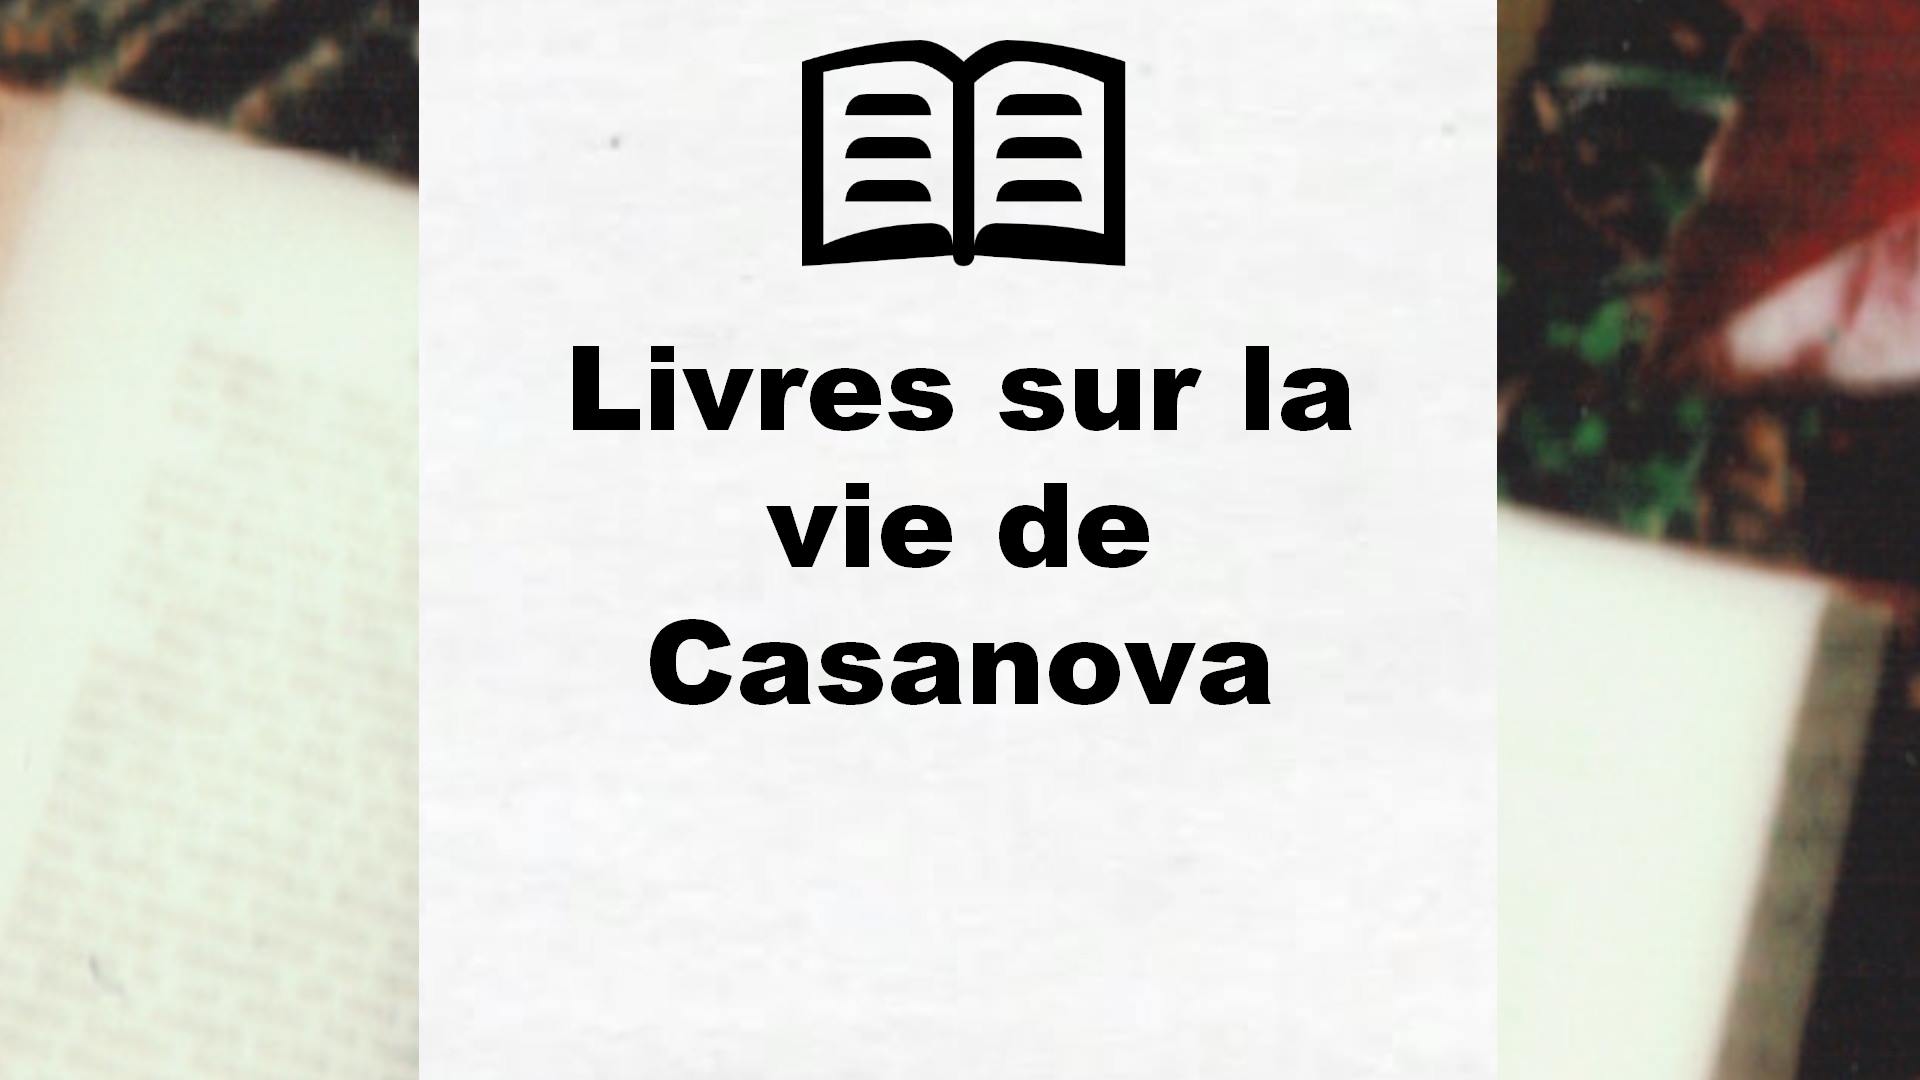 Livres sur la vie de Casanova